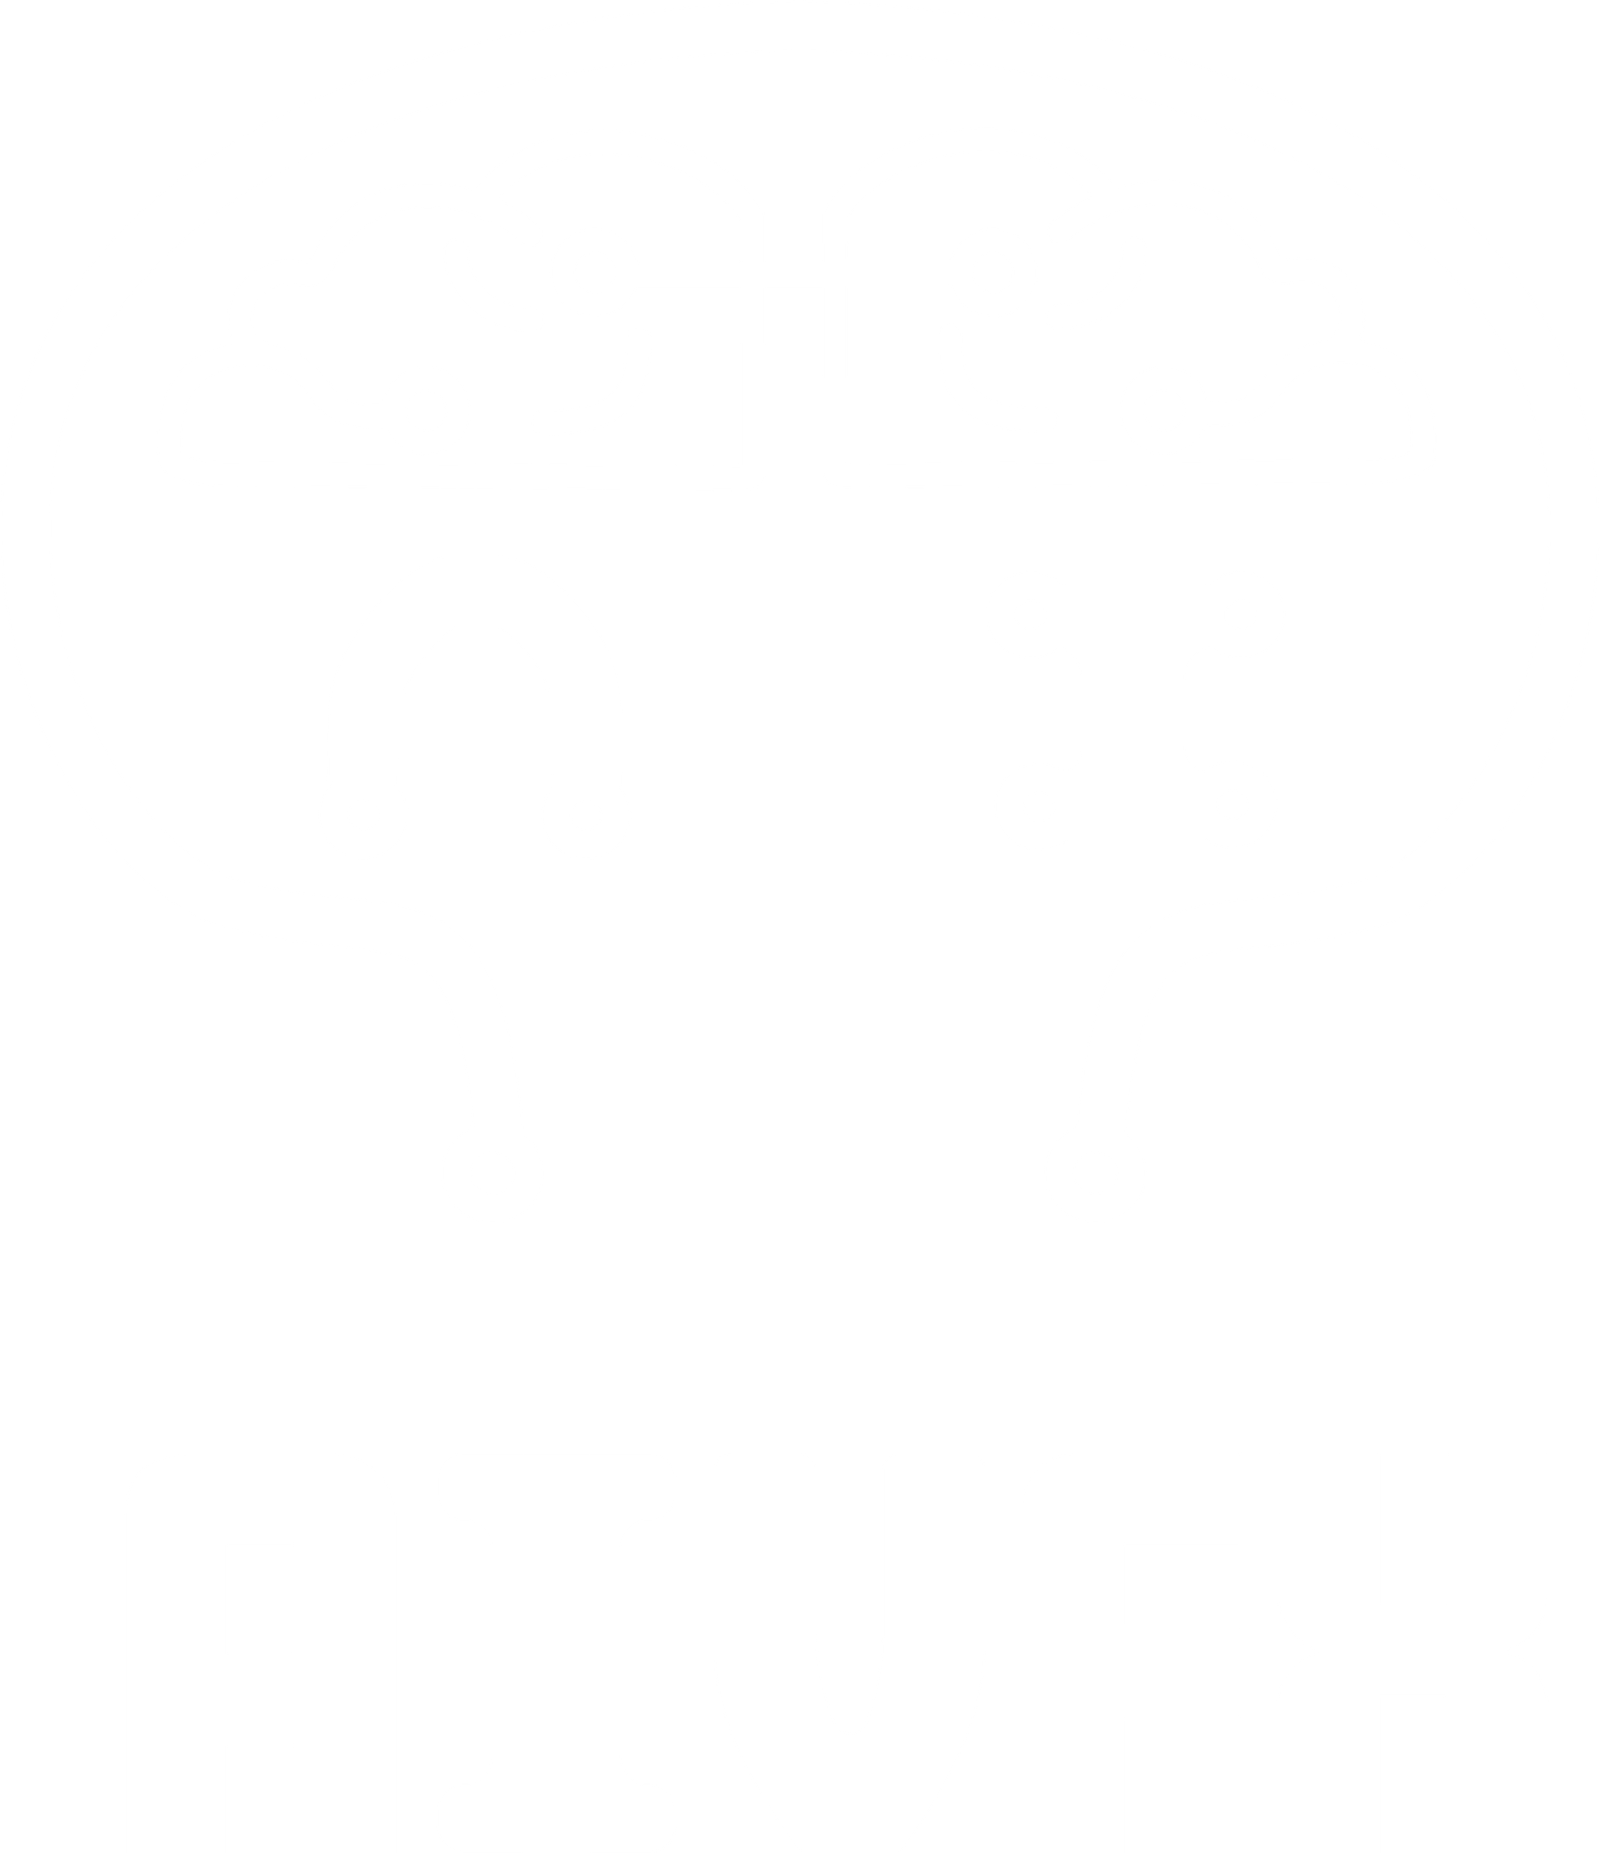 AIVFX